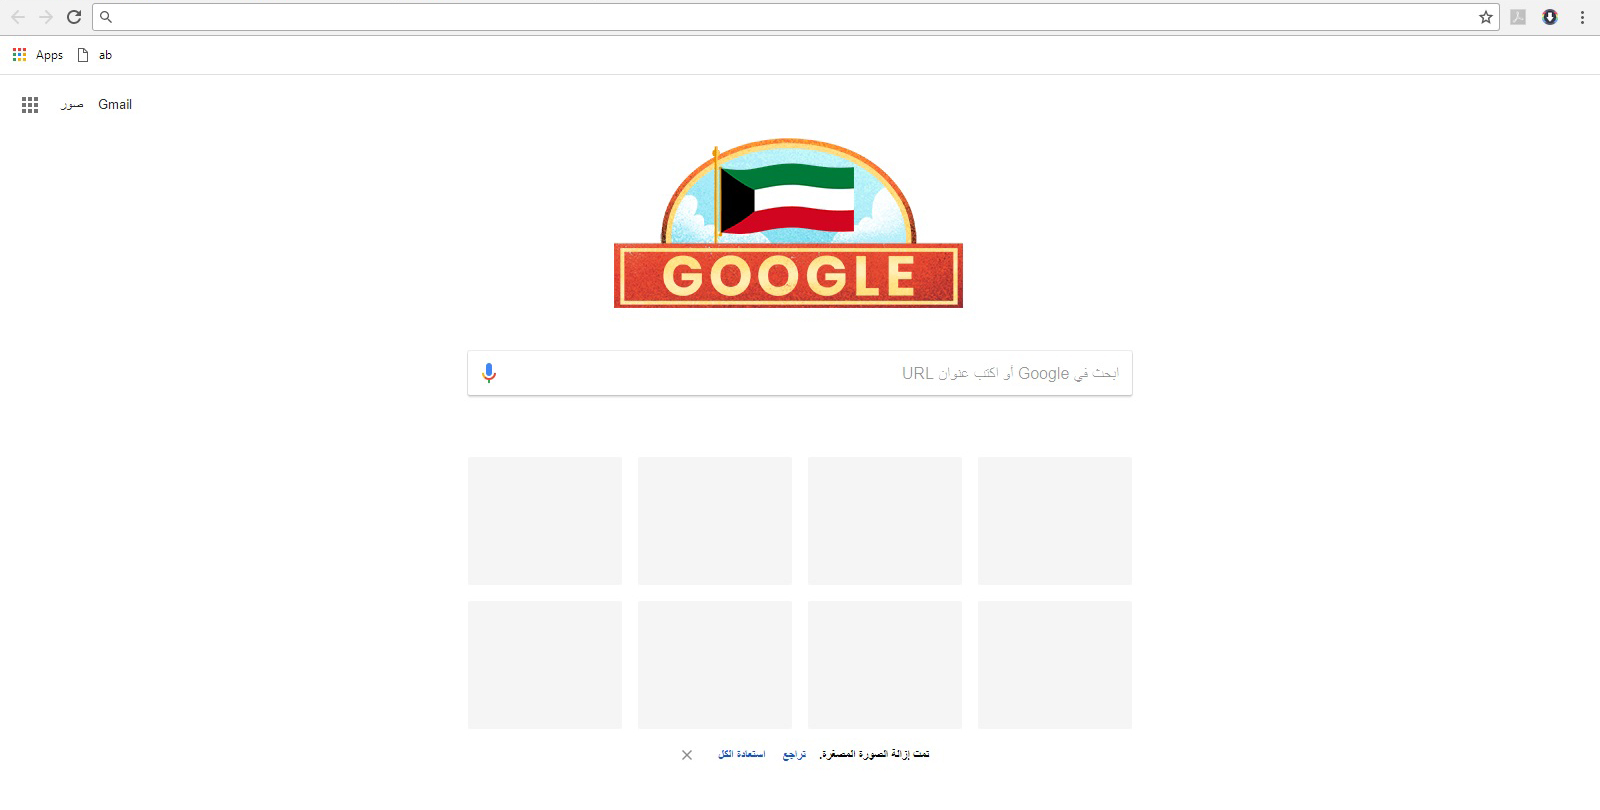 Google celebrates Kuwait's national, liberation day